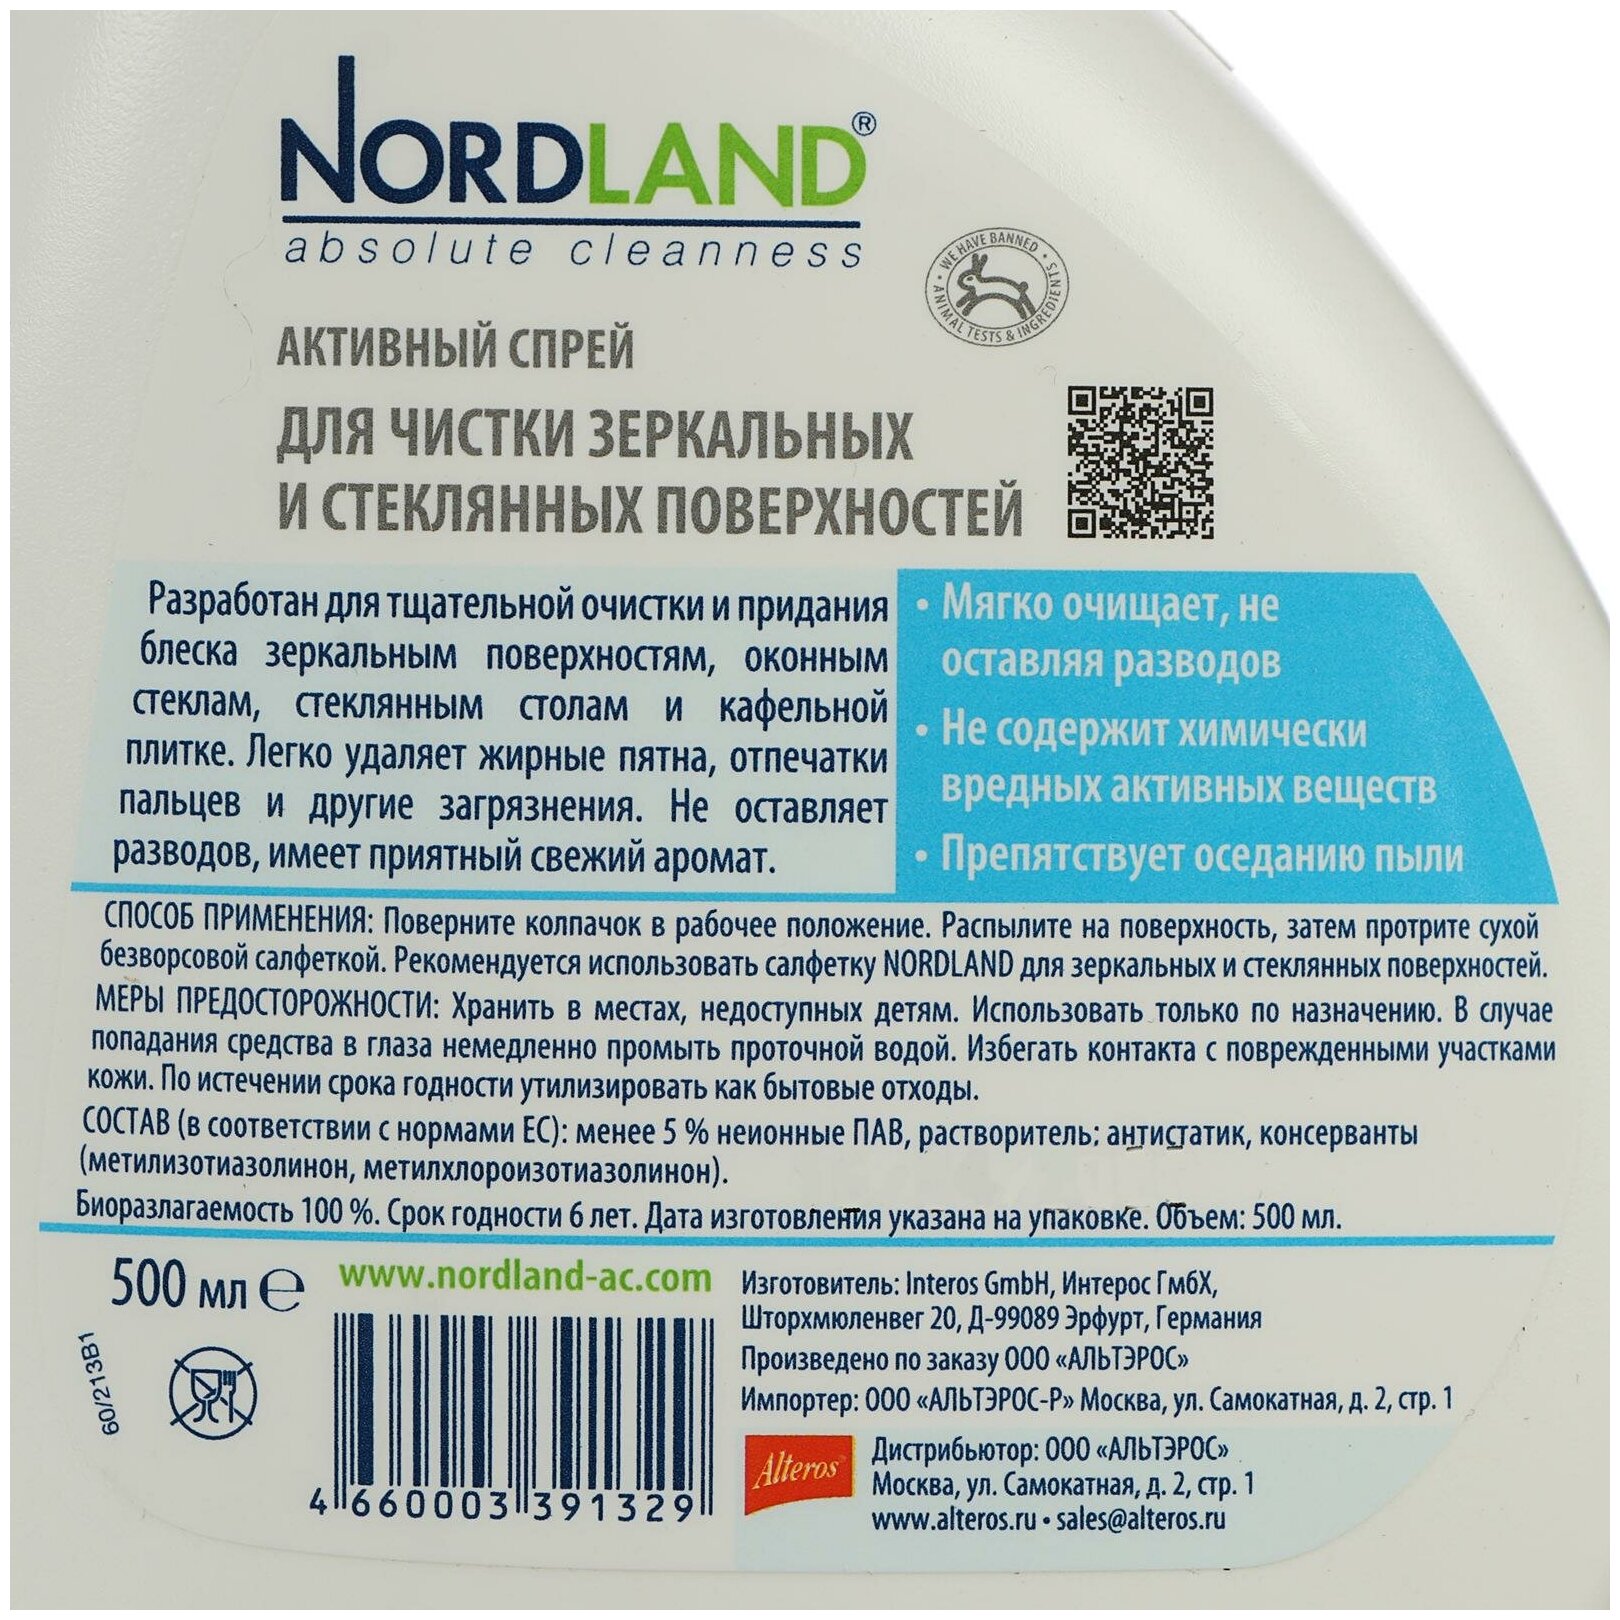 Спрей Nordland Glass Cleaner для чистки зеркальных и стеклянных поверхностей, 500 мл